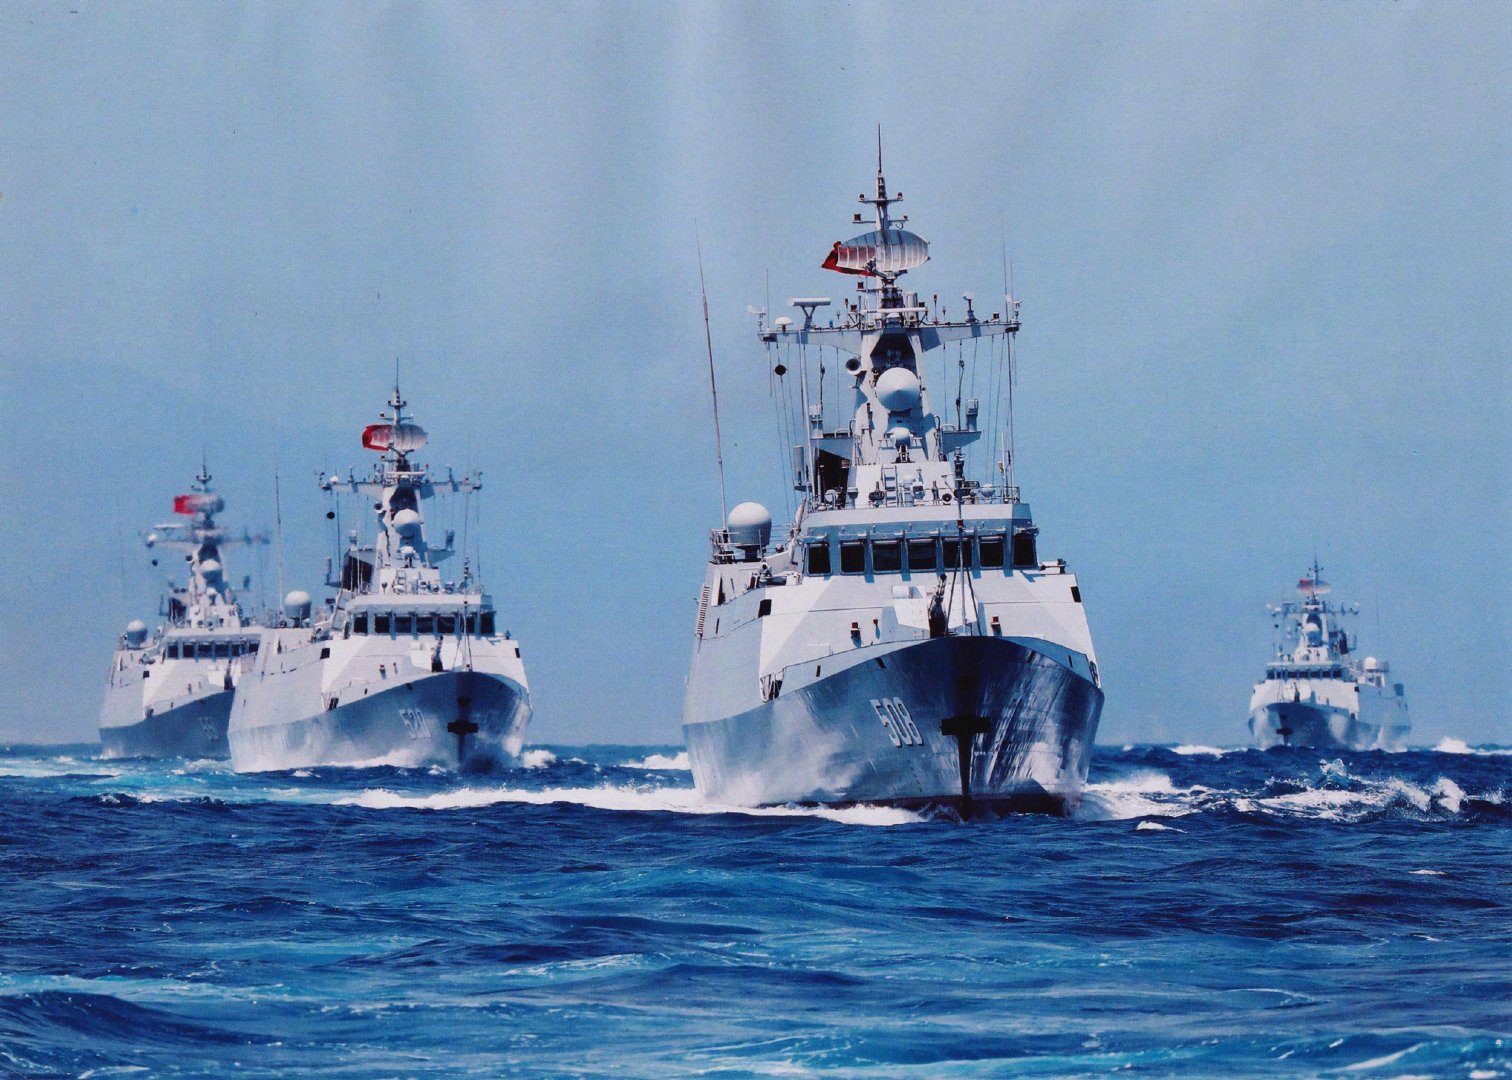 泰国海军这护卫舰堪称056雏形,造价极便宜,曾去亚丁湾打海盗 ... 